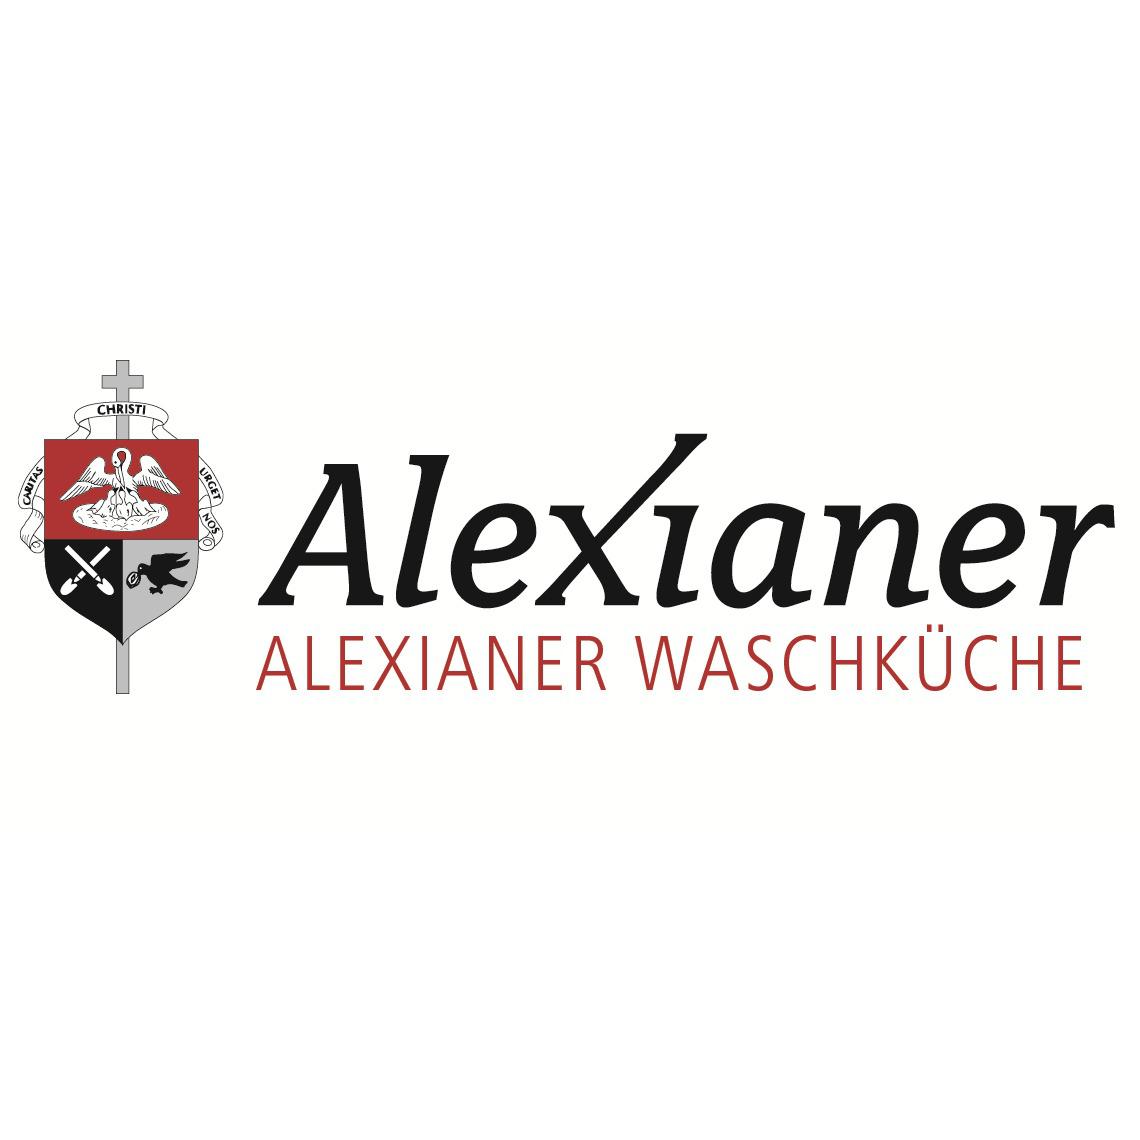 Alexianer Waschküche - German Restaurant - Münster - 0251 9731027500 Germany | ShowMeLocal.com